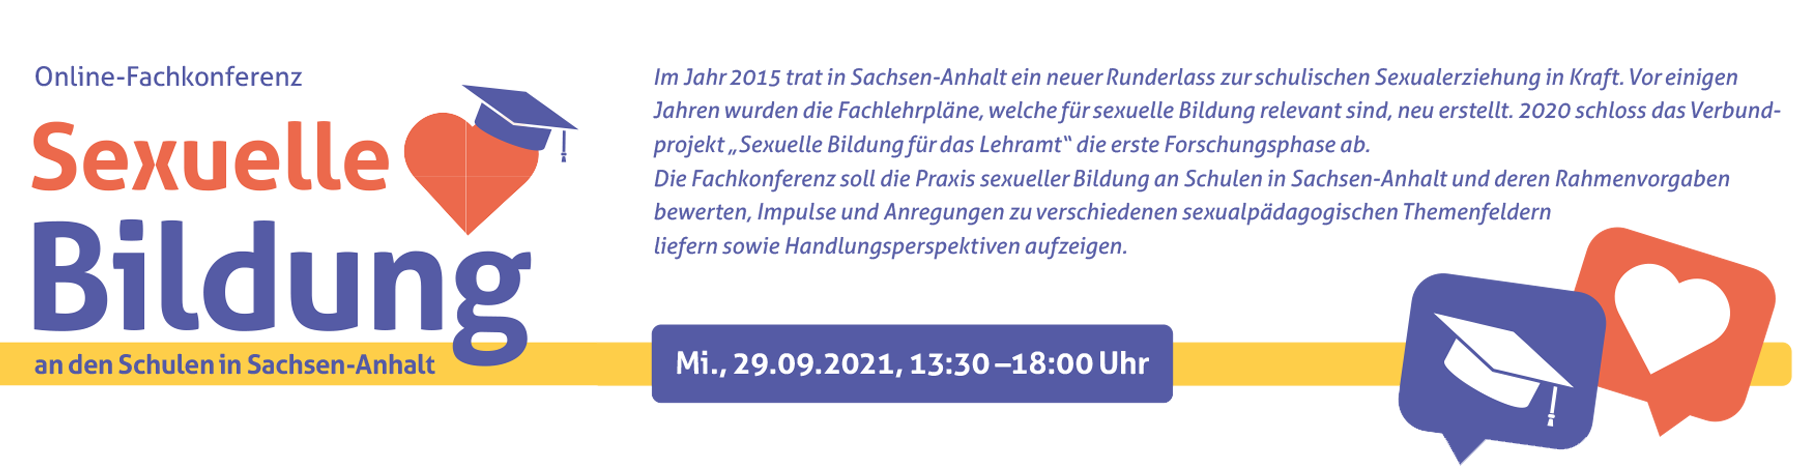 Fachkonferenz „Sexuelle Bildung an den Schulen in Sachsen-Anhalt“ am 29.09.2021